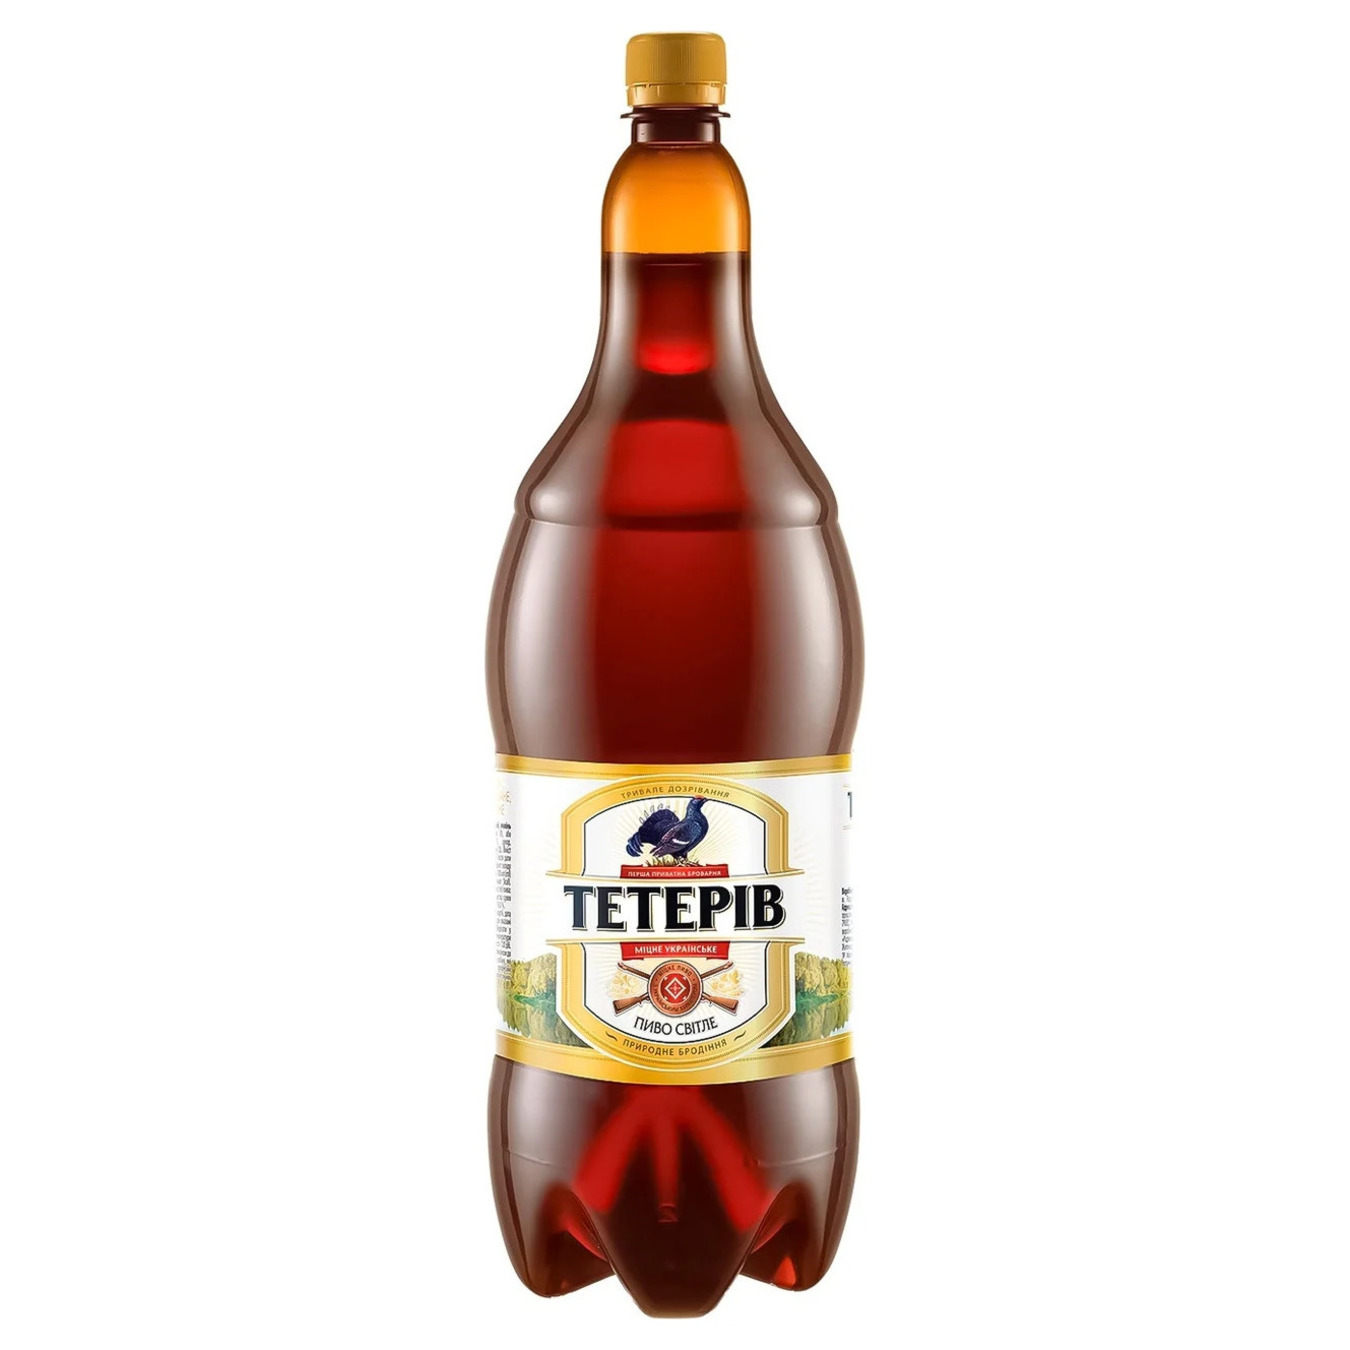 Teteriv light beer 7.5% 1.8 l